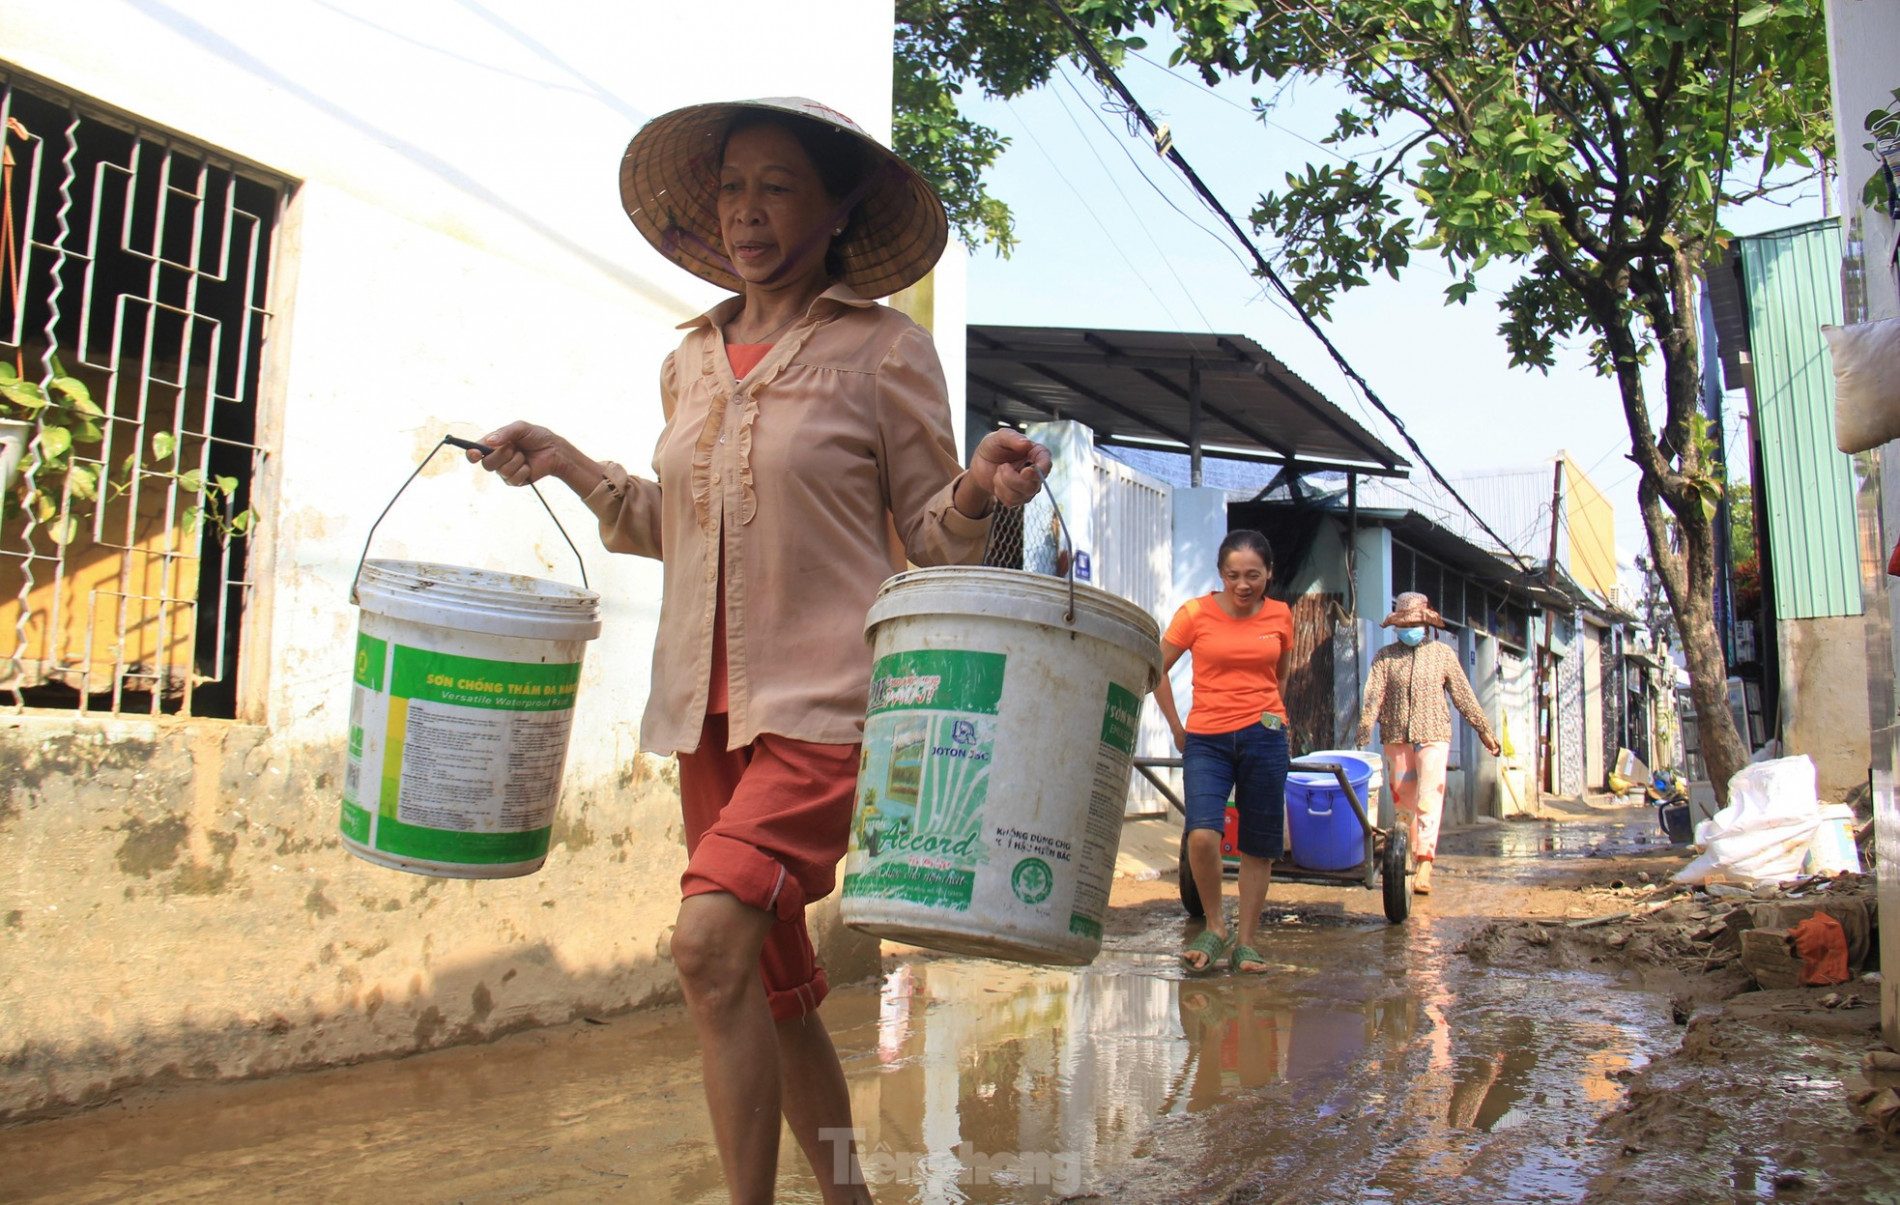 Bộ đội cõng nước sạch cho dân vùng ngập sau nhiều ngày khát khô ảnh 6